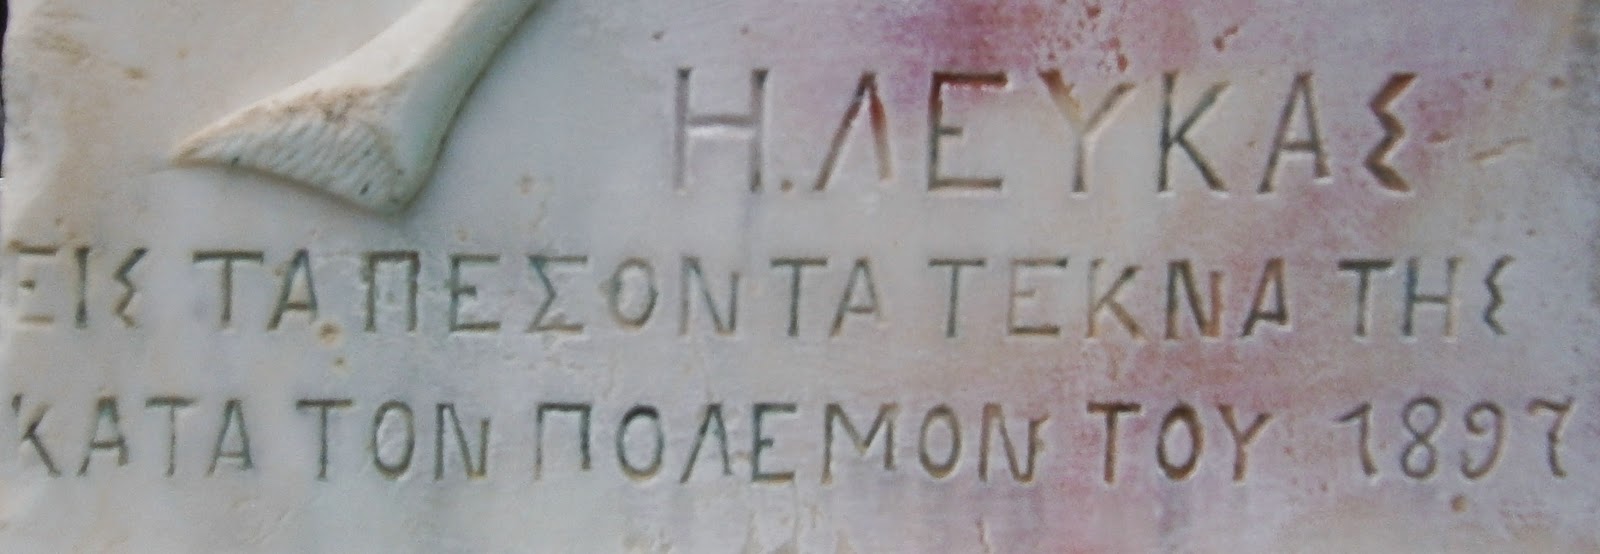 το μνημείο πεσόντων στον πόλεμο του 1897 στη Λευκάδα